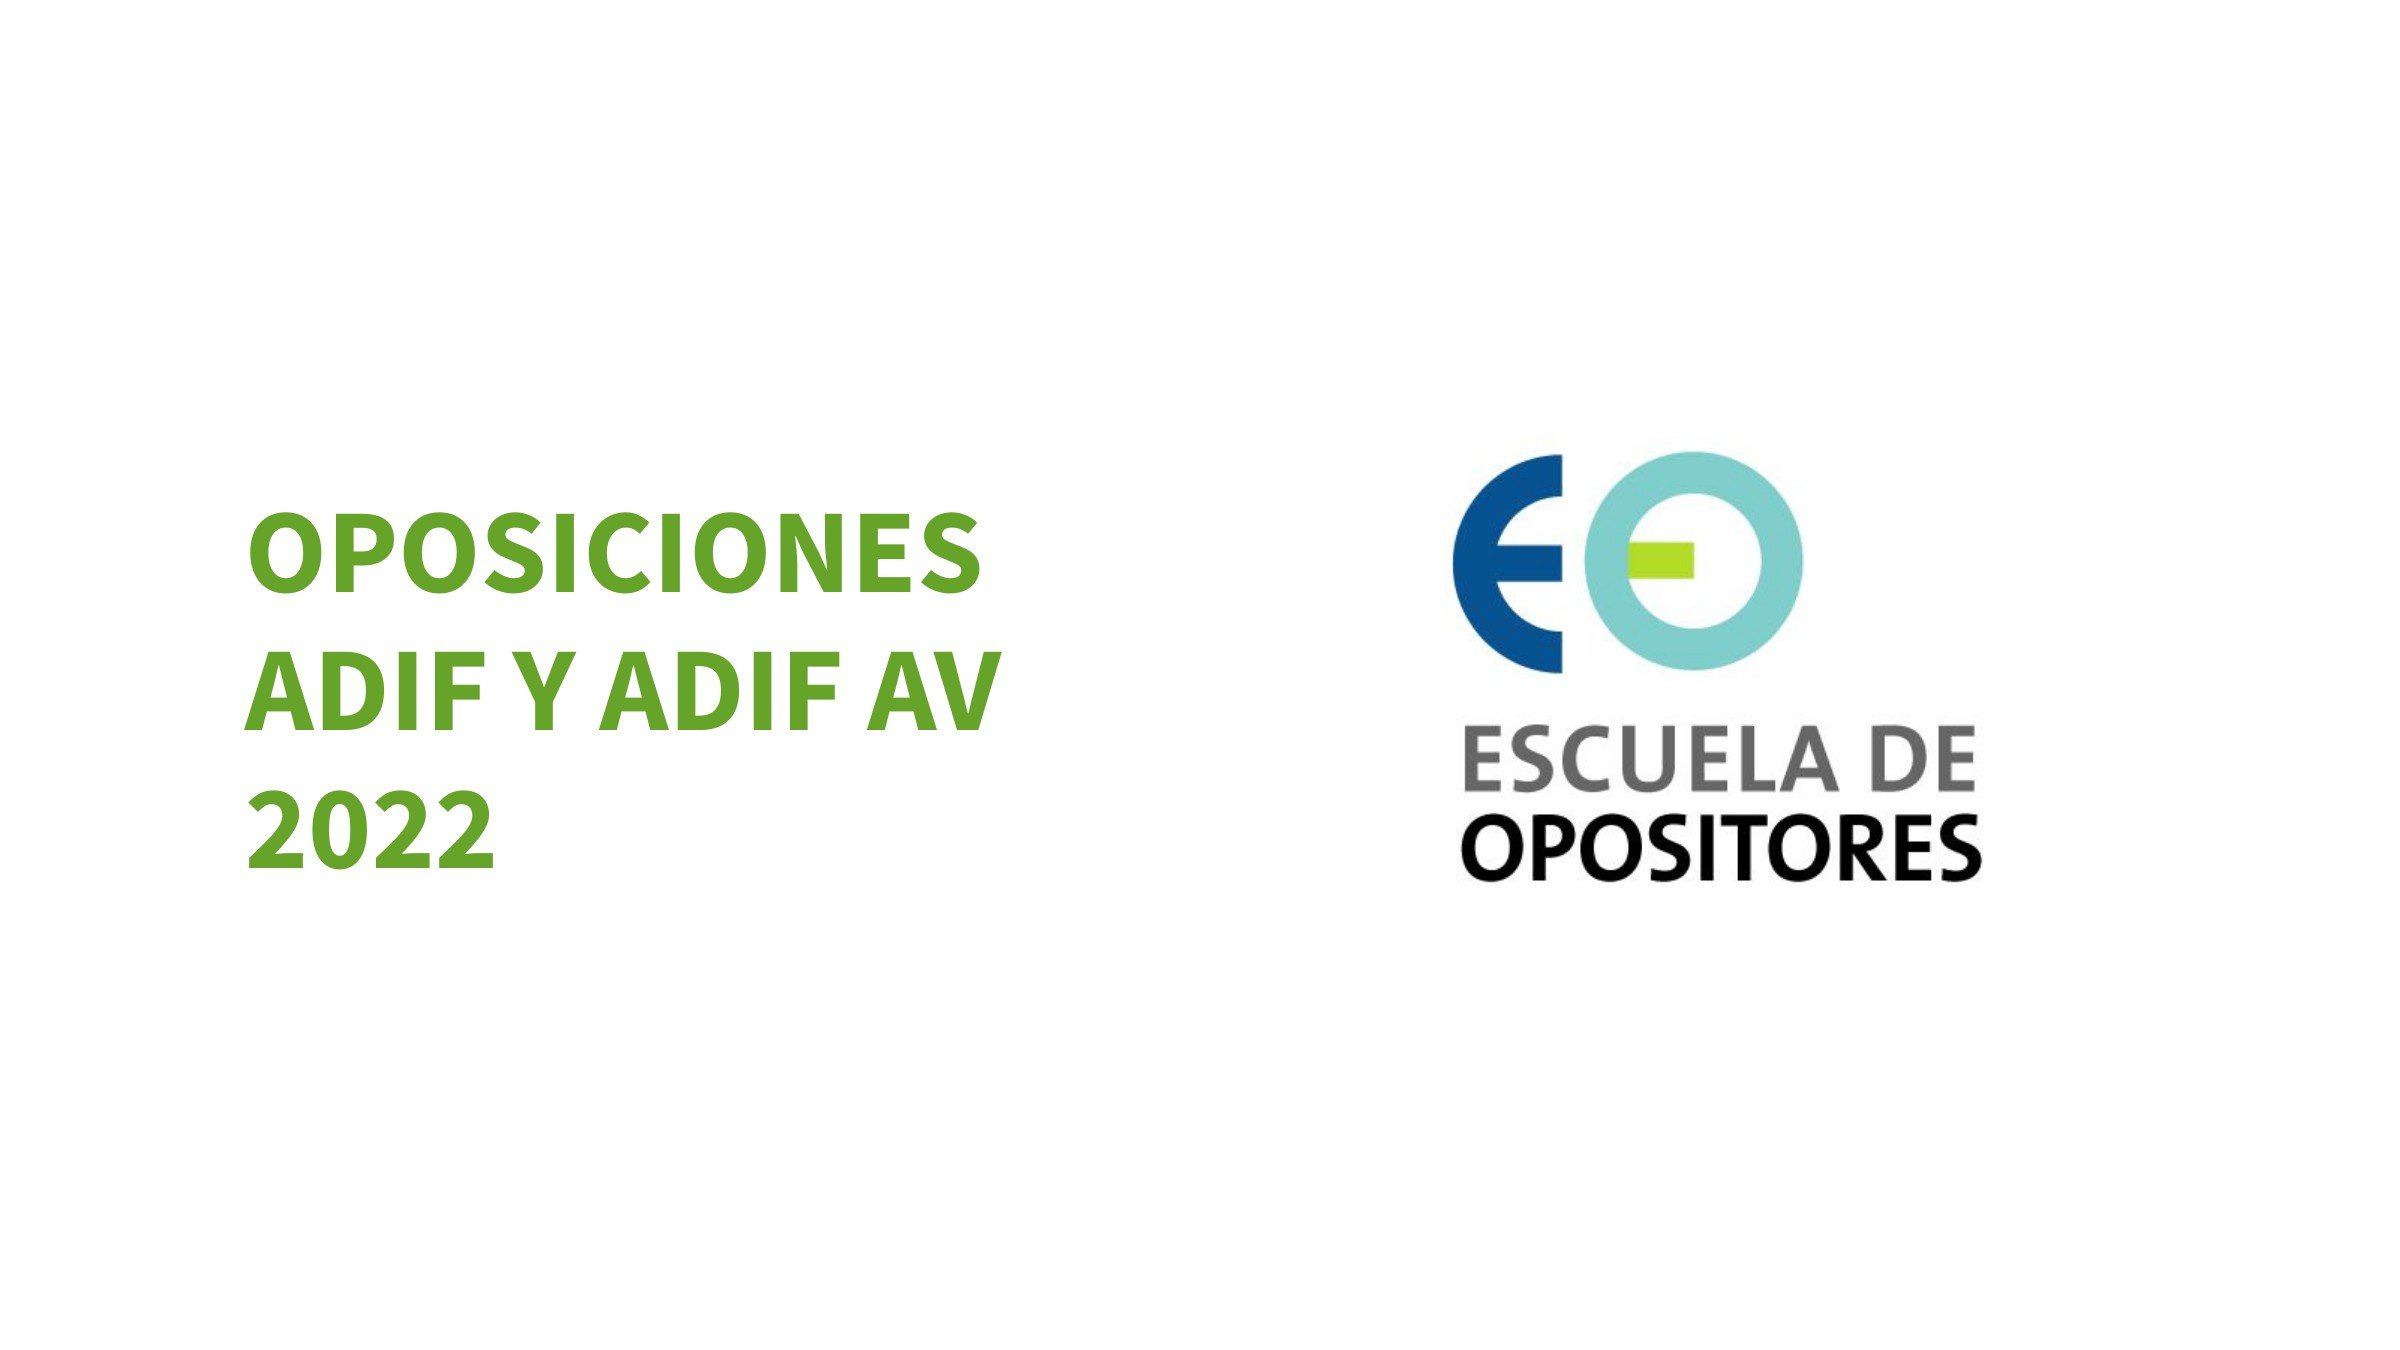 Oposiciones ADIF y ADIF AV 2022 – Curso preparación Test Psicométrico y de conocimientos